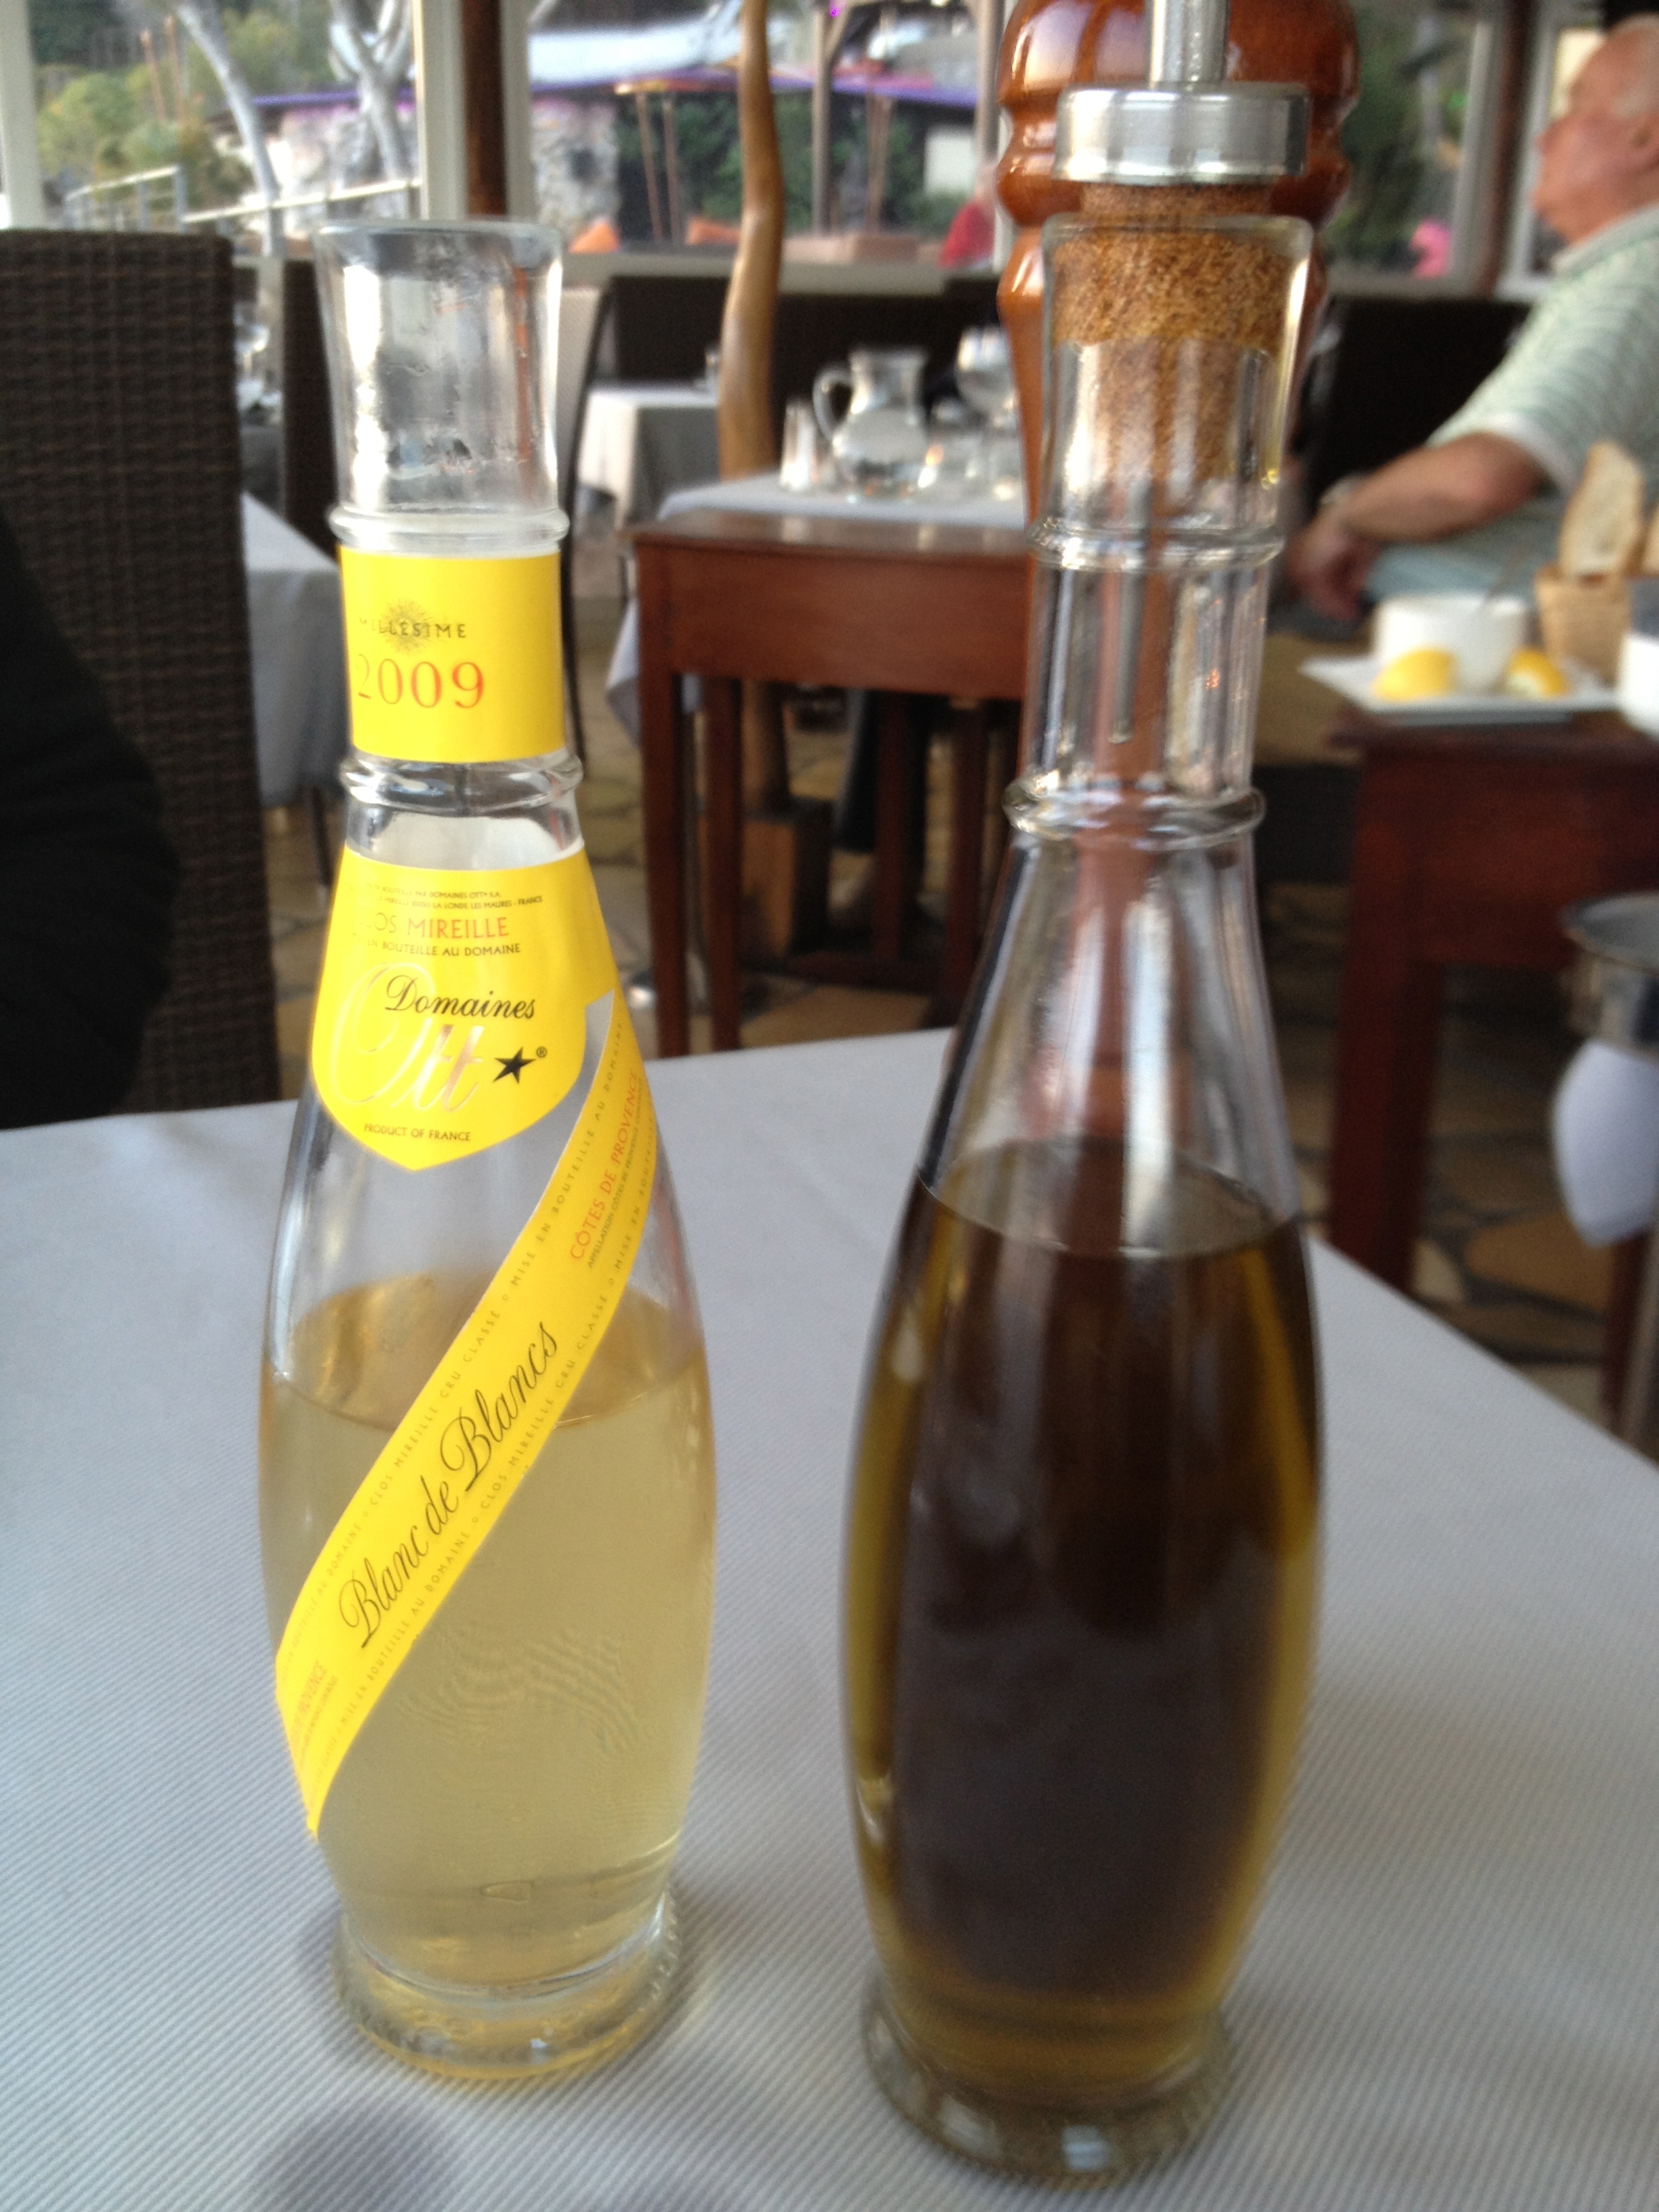 Domaine Ott wine &amp; similarly shaped olive oil